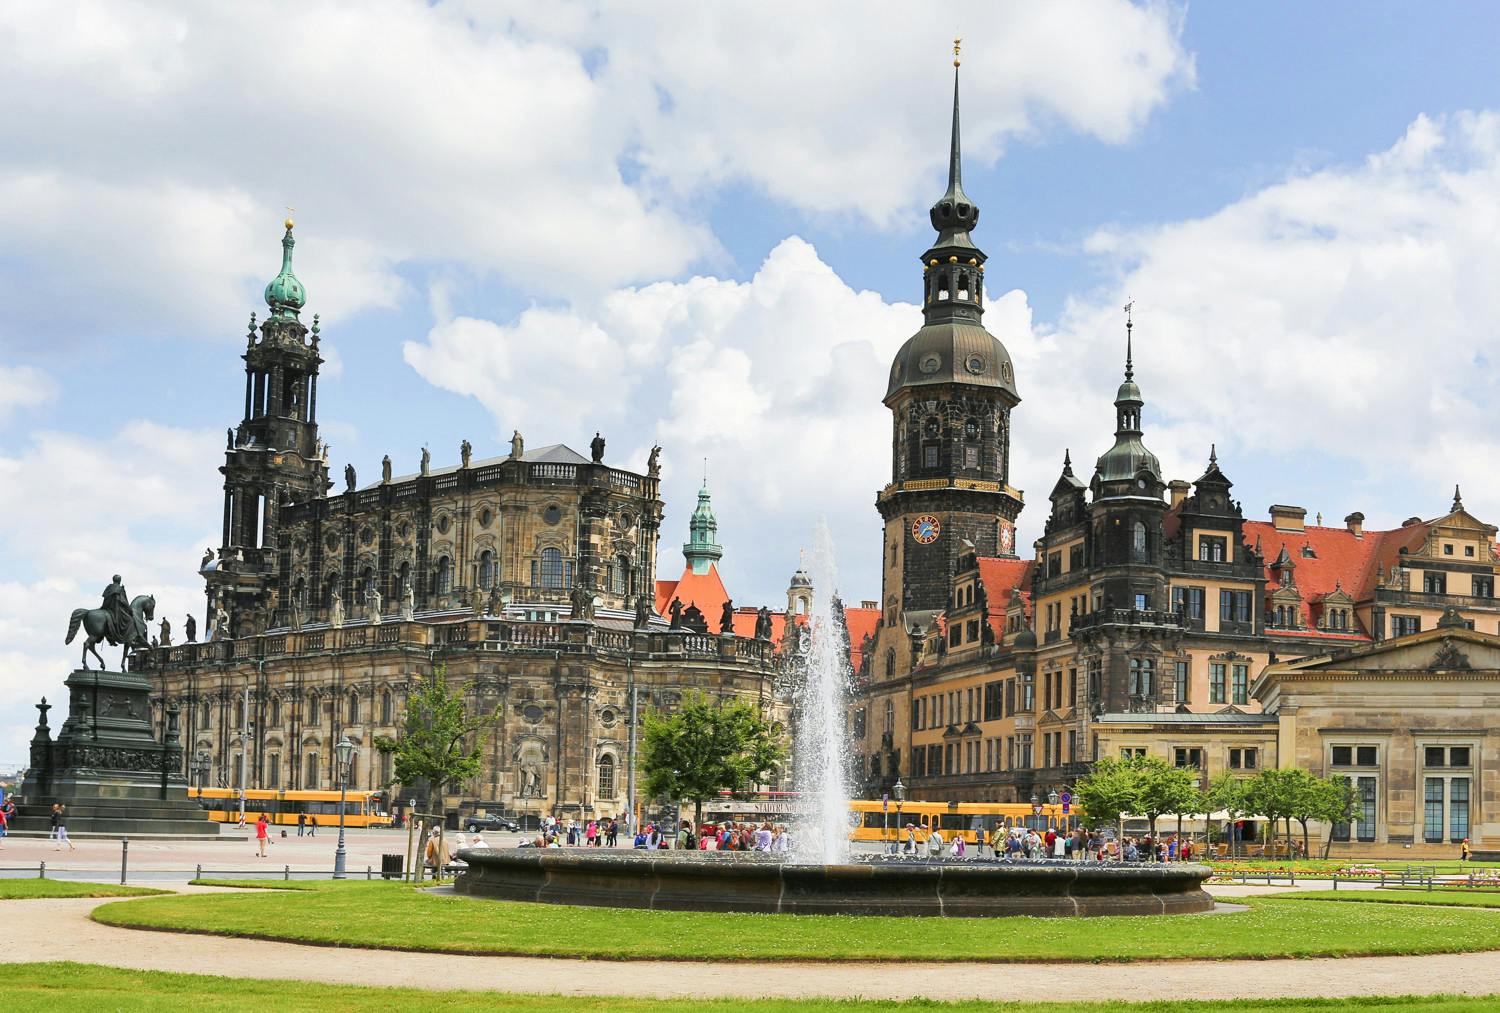 Stadtrundgang durch Dresdens historische Altstadt (3).jpg